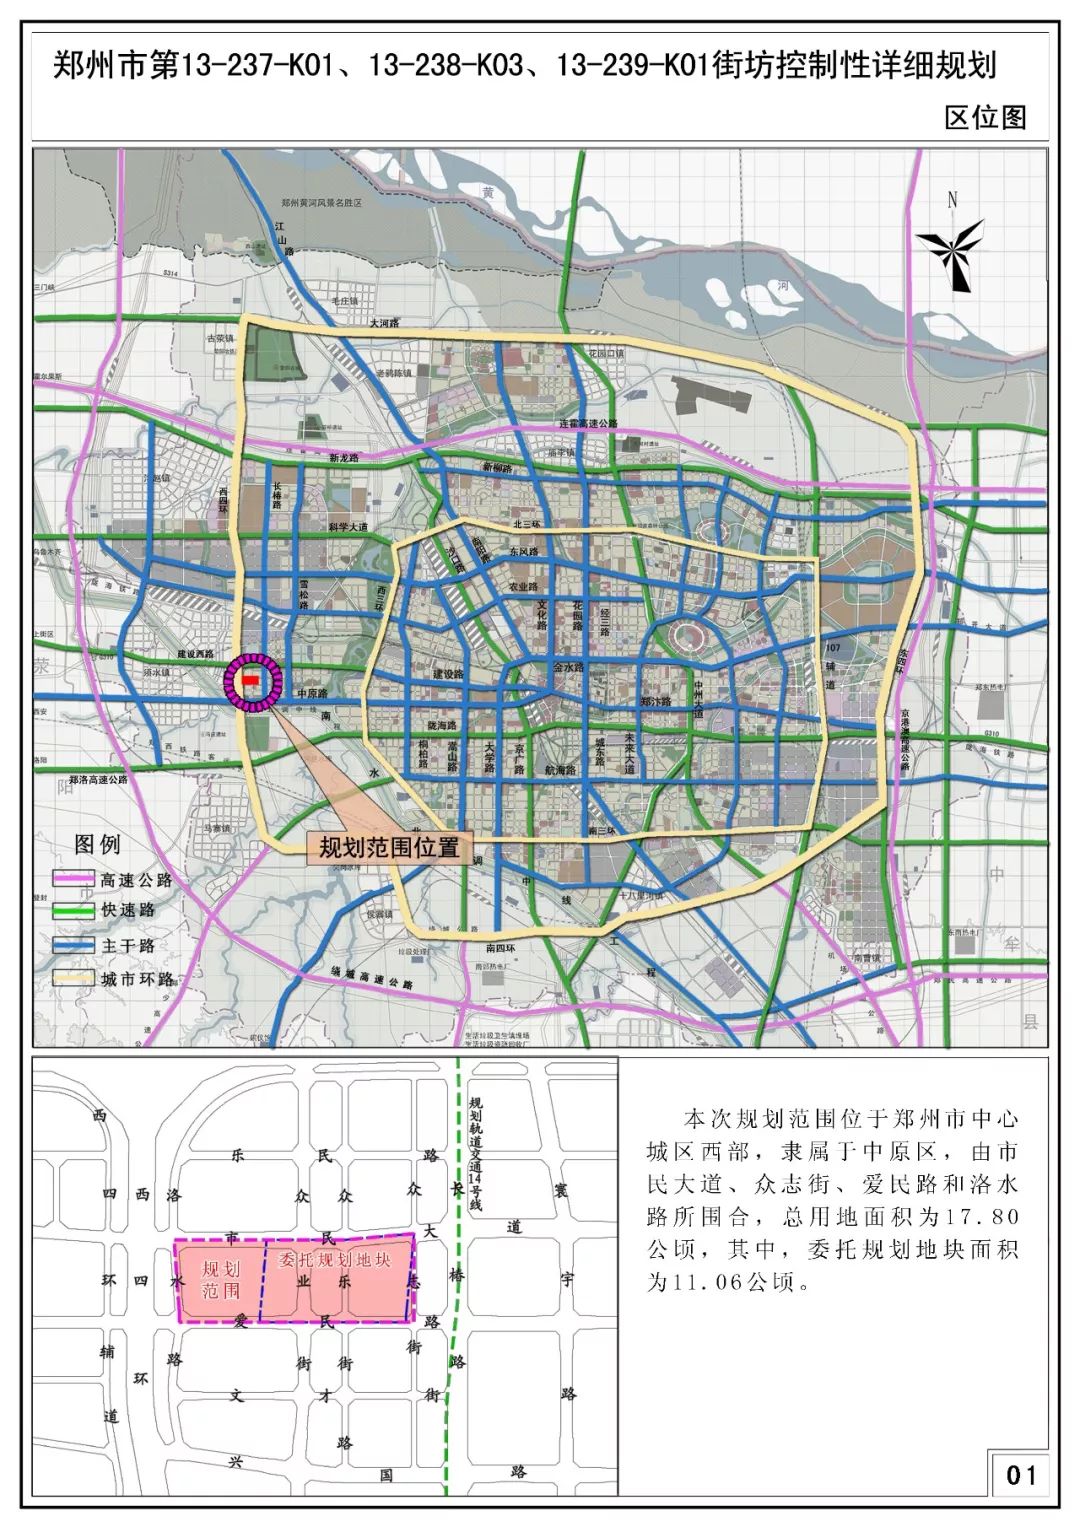 郑州新区再出新规划,涉及常西湖新区/二七新区/金水张家村,杨君刘村.